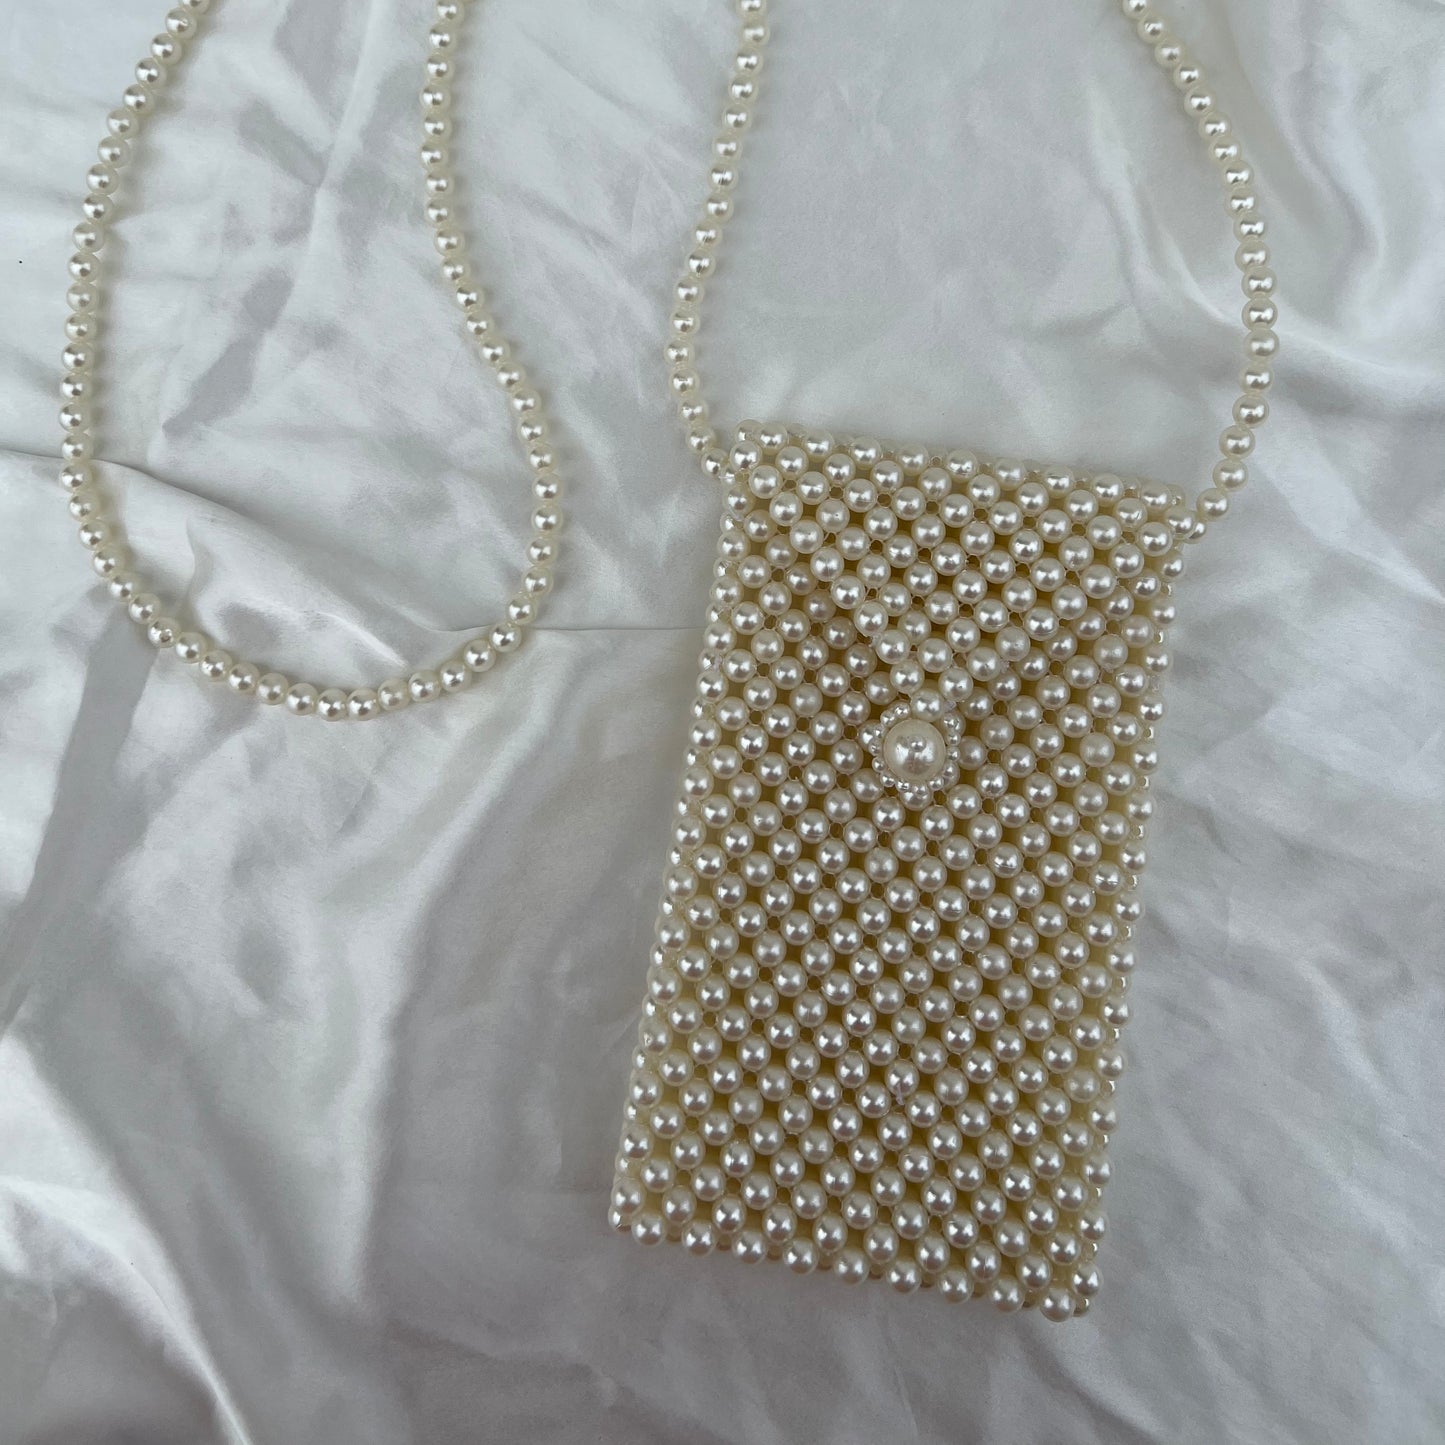 Handmade Pearl Mobile sling